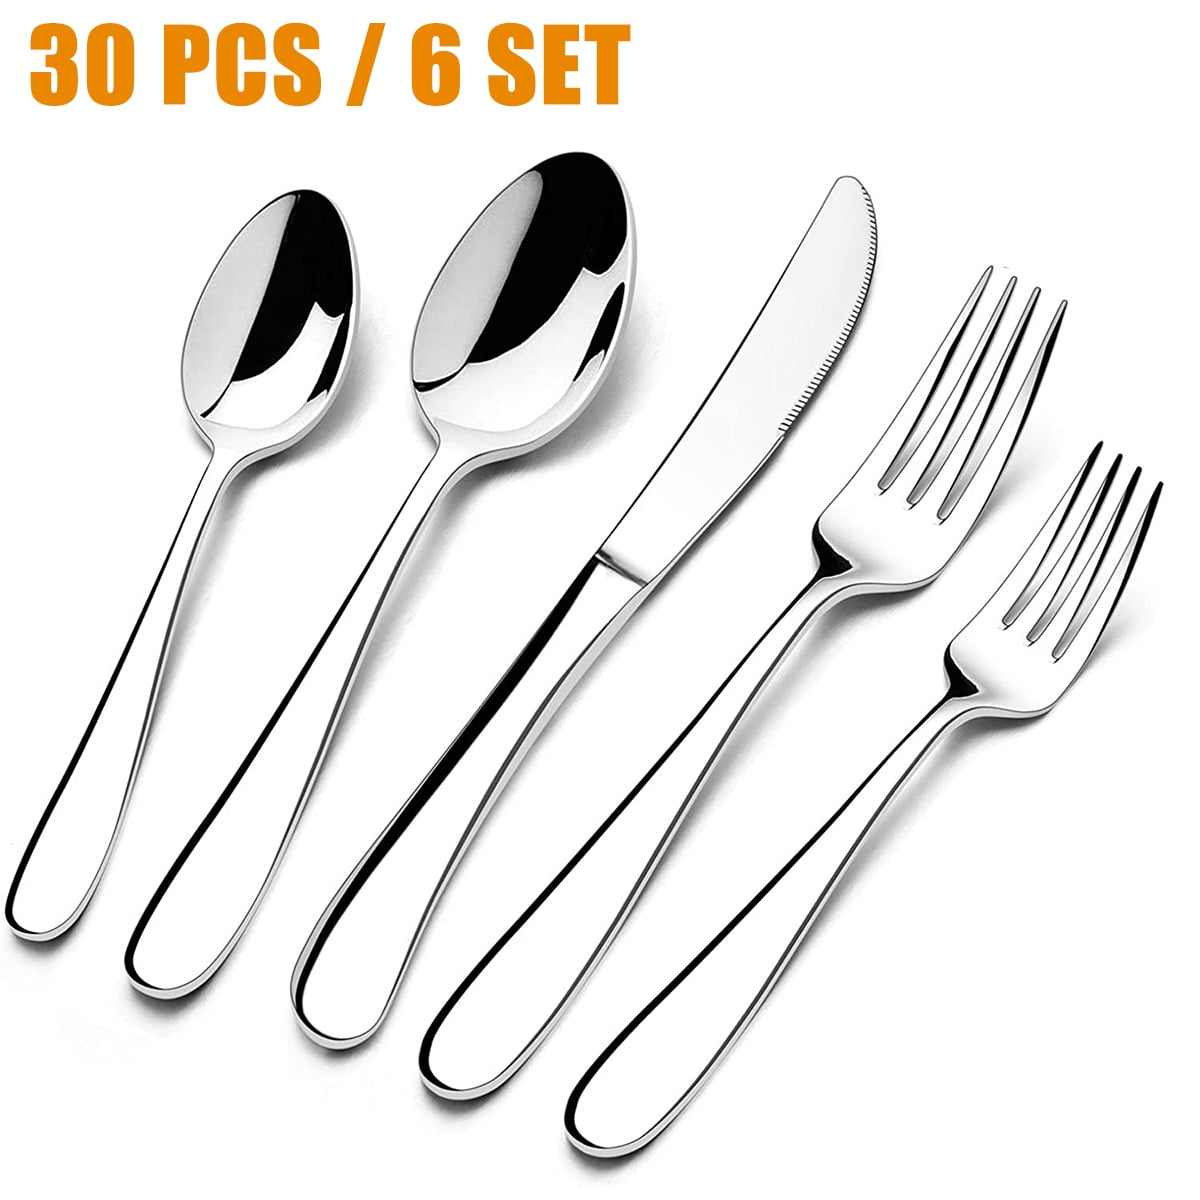 HaWare 6-Pieces Stainless Steel Forks Mirror Polished Classic Elegant Design Dishwasher Safe Dinner Forks 